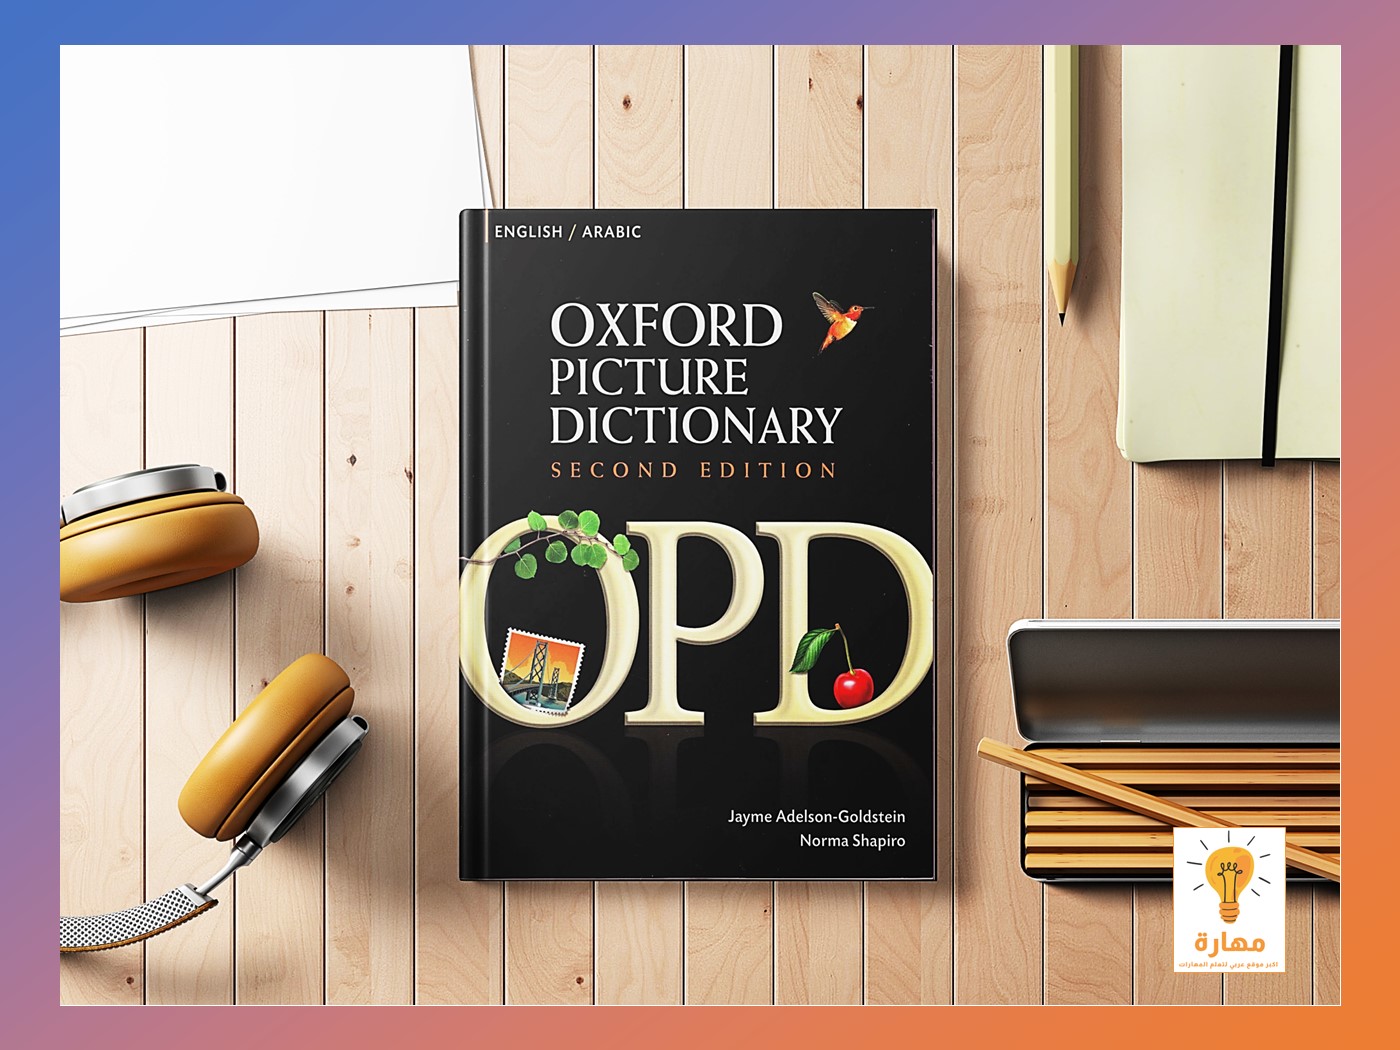 كتاب قاموس اوكسفورد المصور